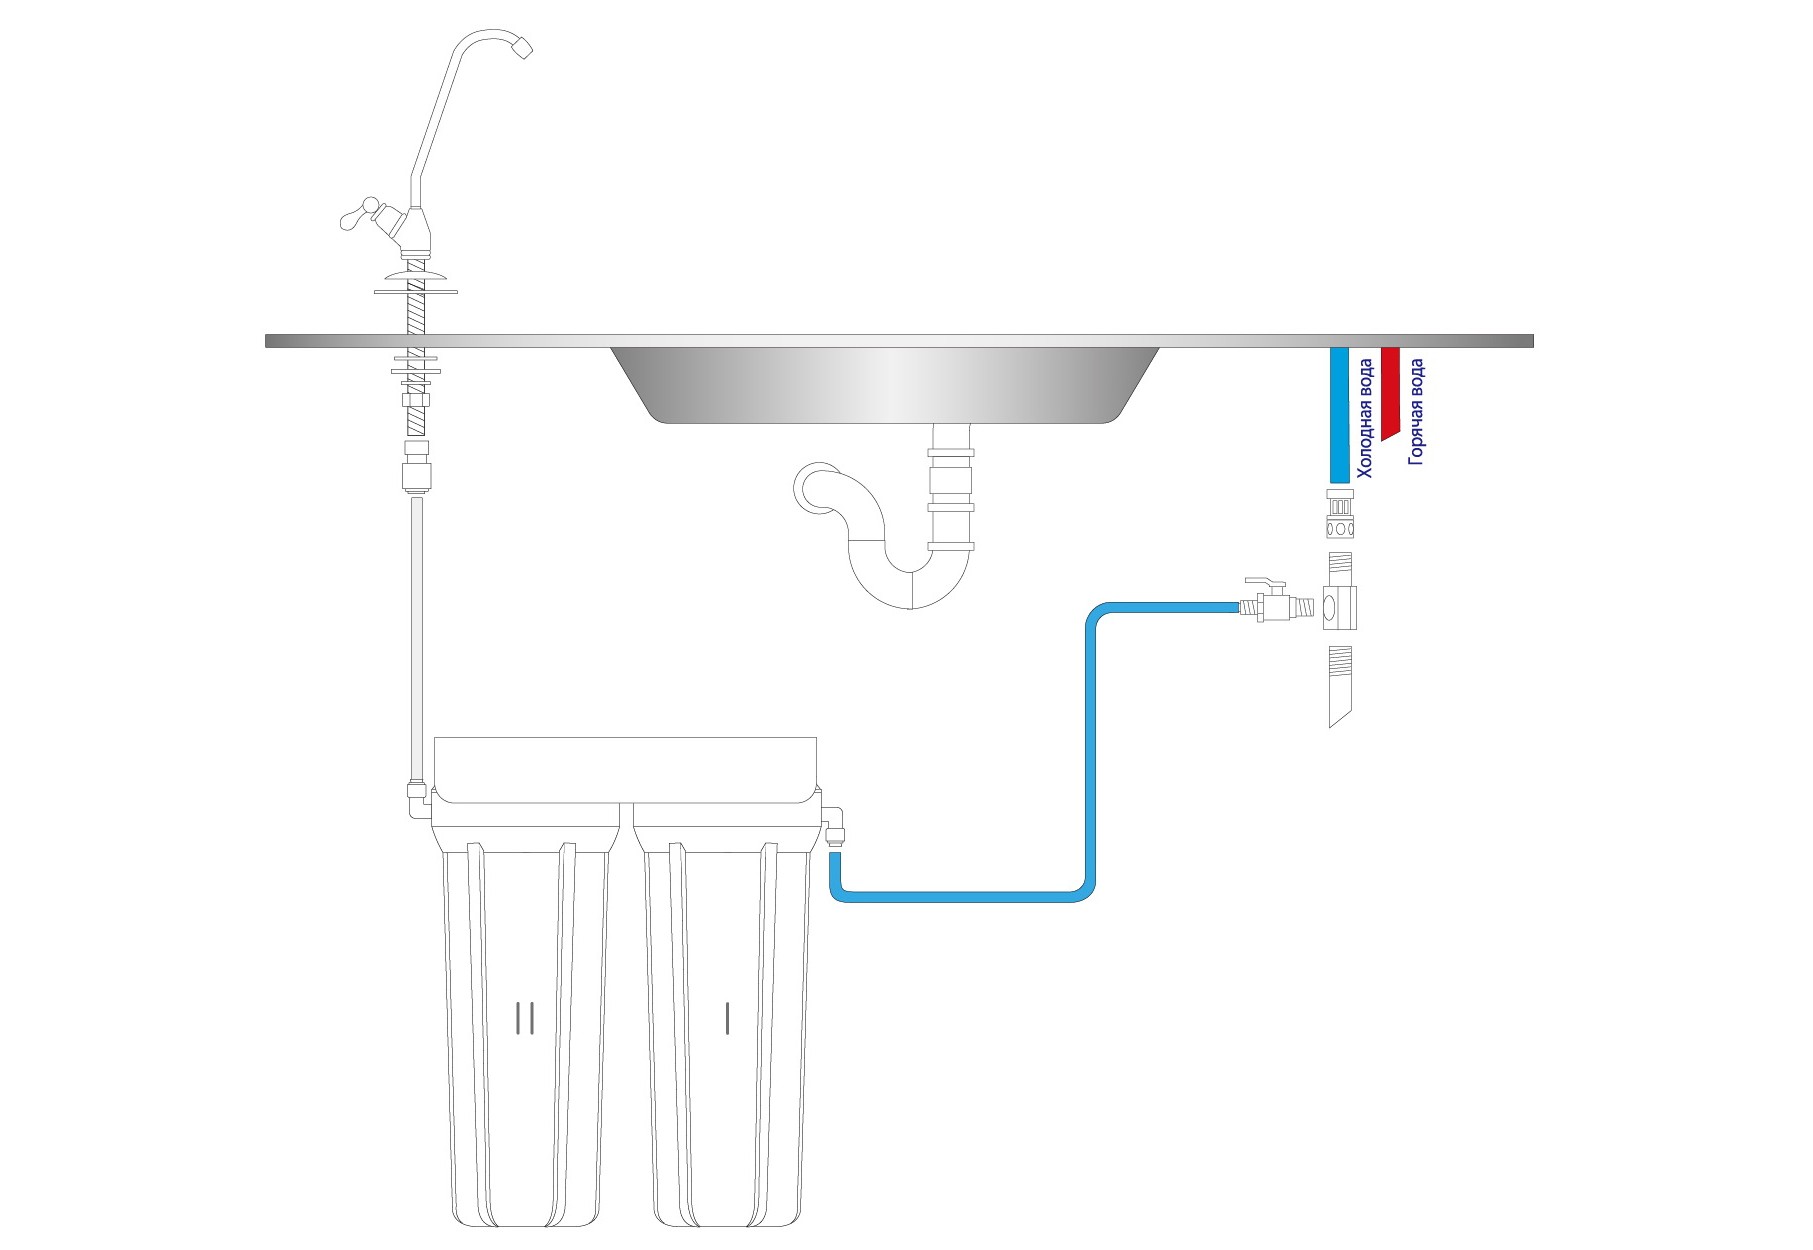 Фильтры для воды под мойку спб. Система фильтров для очистки воды в квартиру под мойку. Фильтр для питьевой воды под мойку f1. Фильтр для воды под мойку Аквафор схема соединения. Фильтр для воды под мойку схема установки.